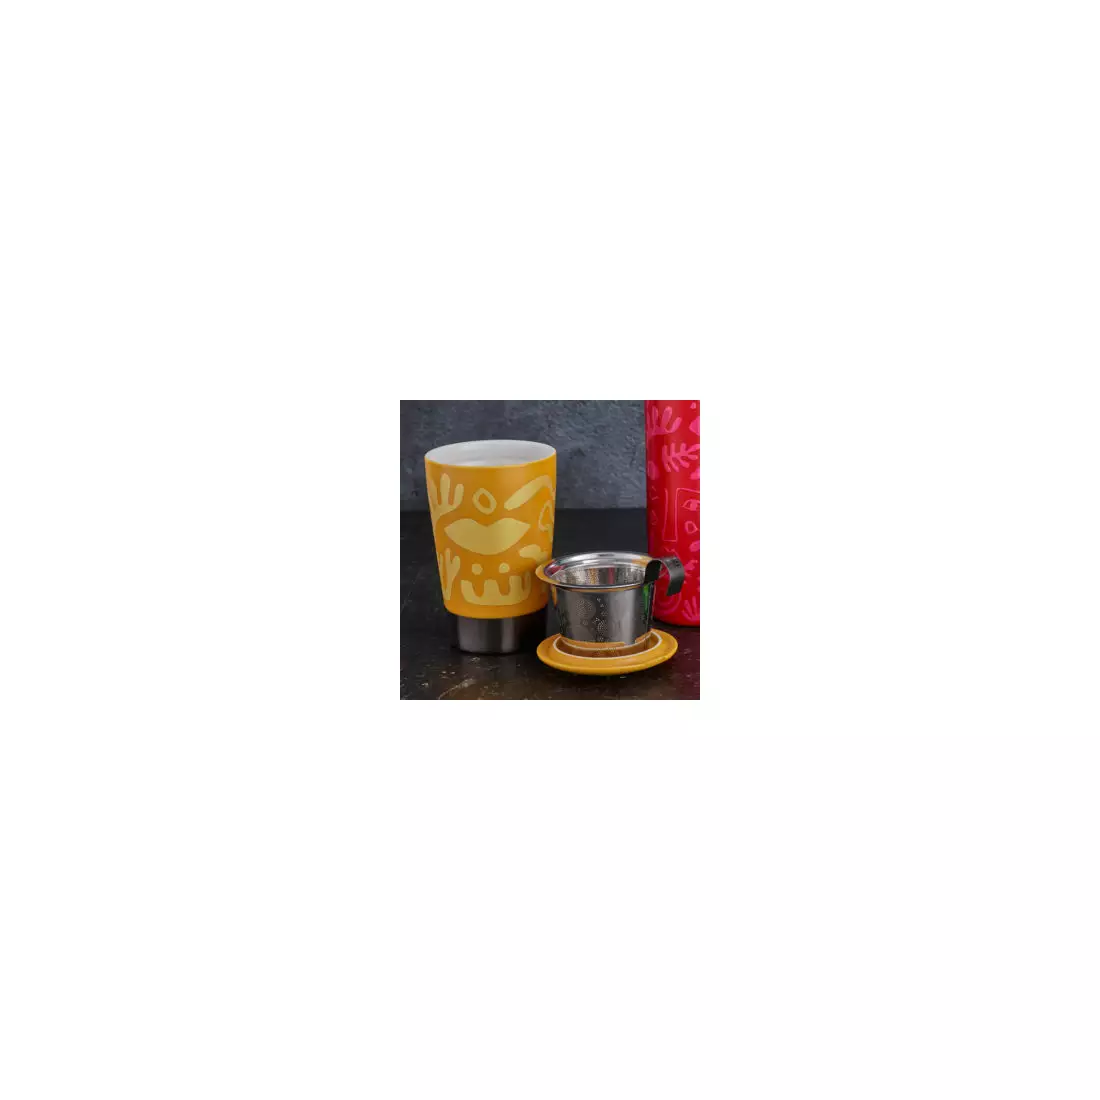 EIGENART TEAEVE kubek termiczny, porcelanowy 350 ml, opera yellow